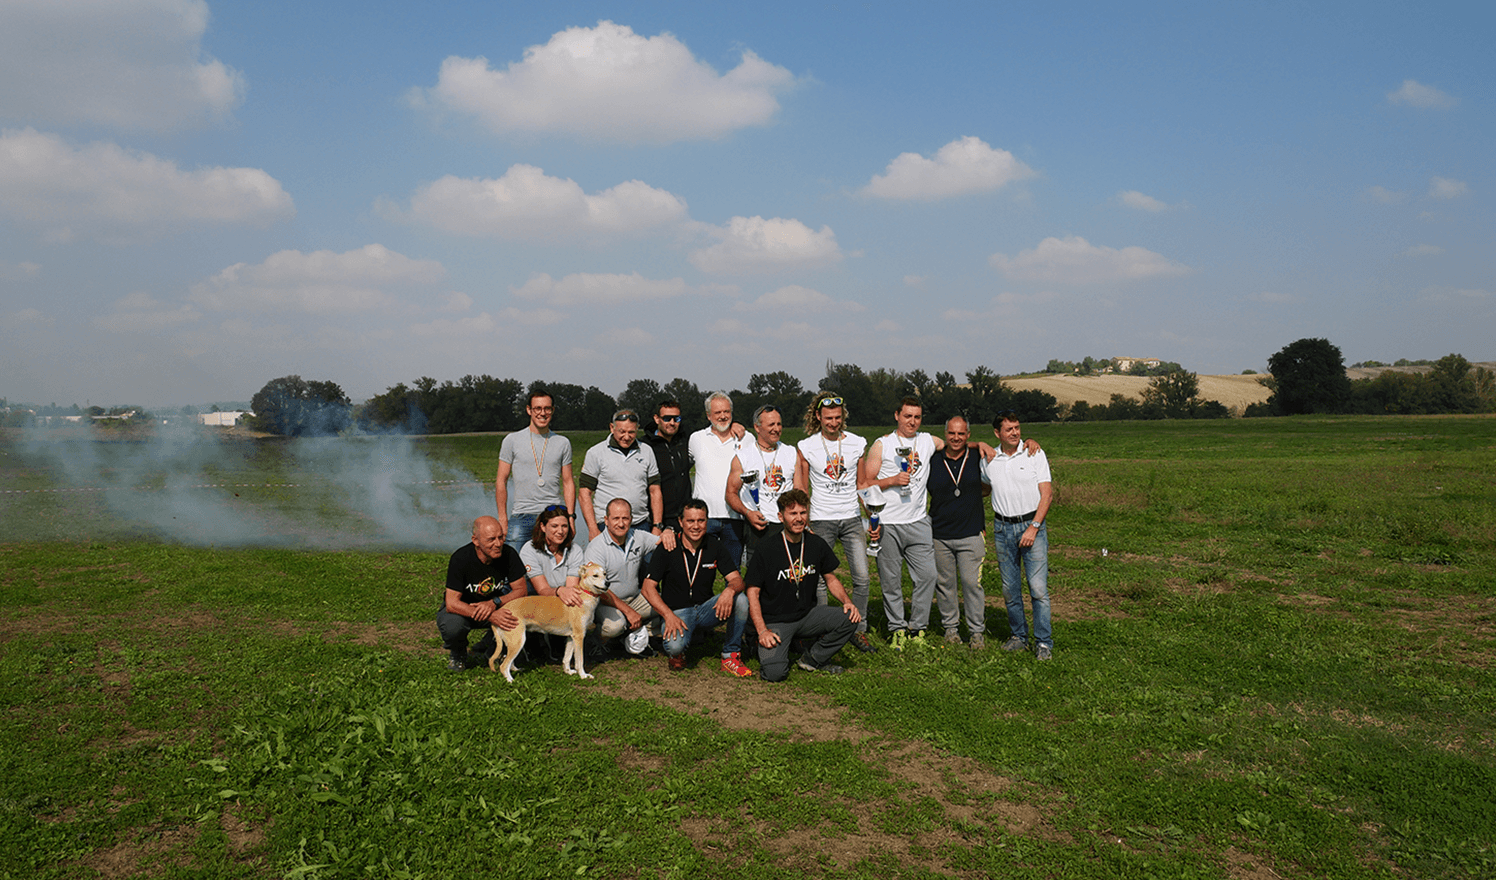 italian paramotor championship 2018